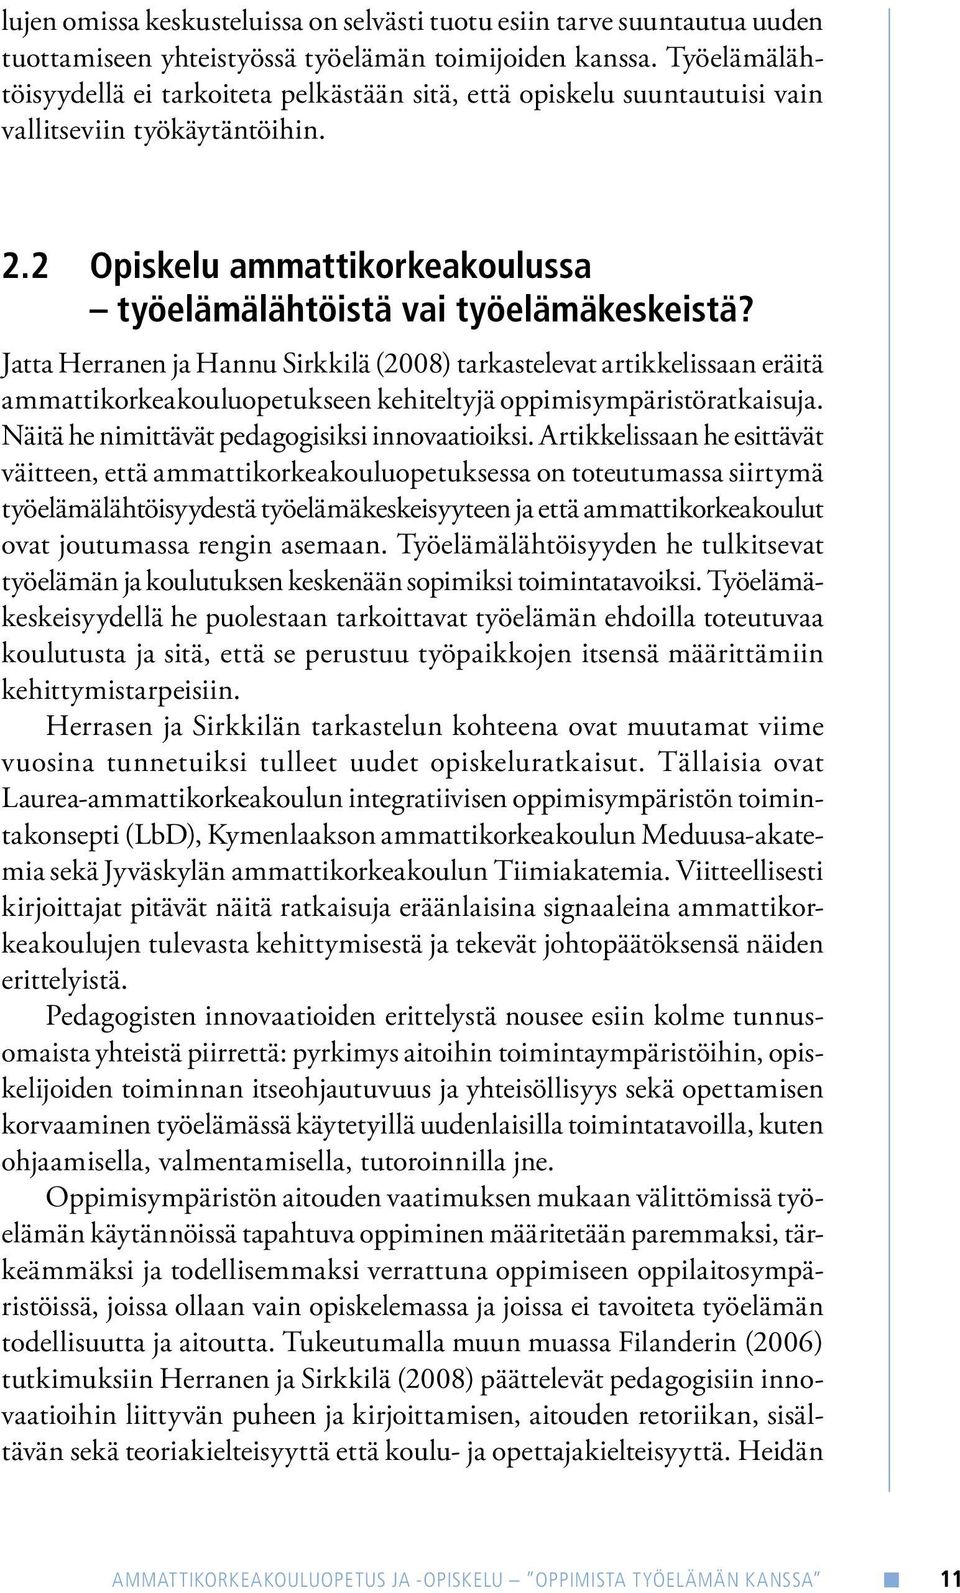 Jatta Herranen ja Hannu Sirkkilä (2008) tarkastelevat artikkelissaan eräitä ammattikorkeakouluopetukseen kehiteltyjä oppimisympäristöratkaisuja. Näitä he nimittävät pedagogisiksi innovaatioiksi.